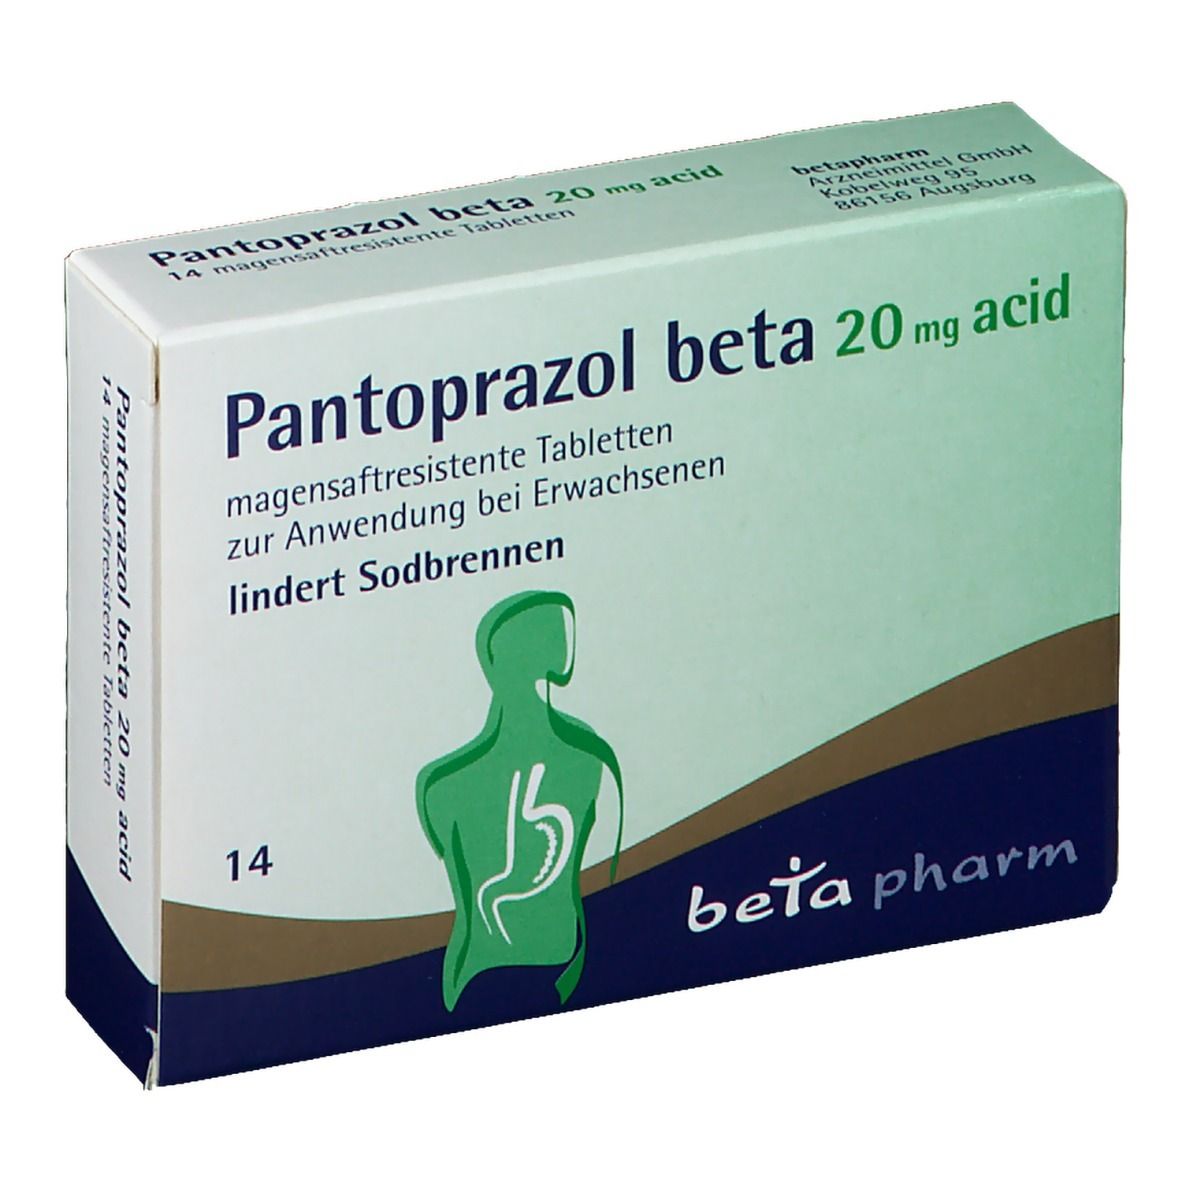 Pantoprazol beta 20 mg acid